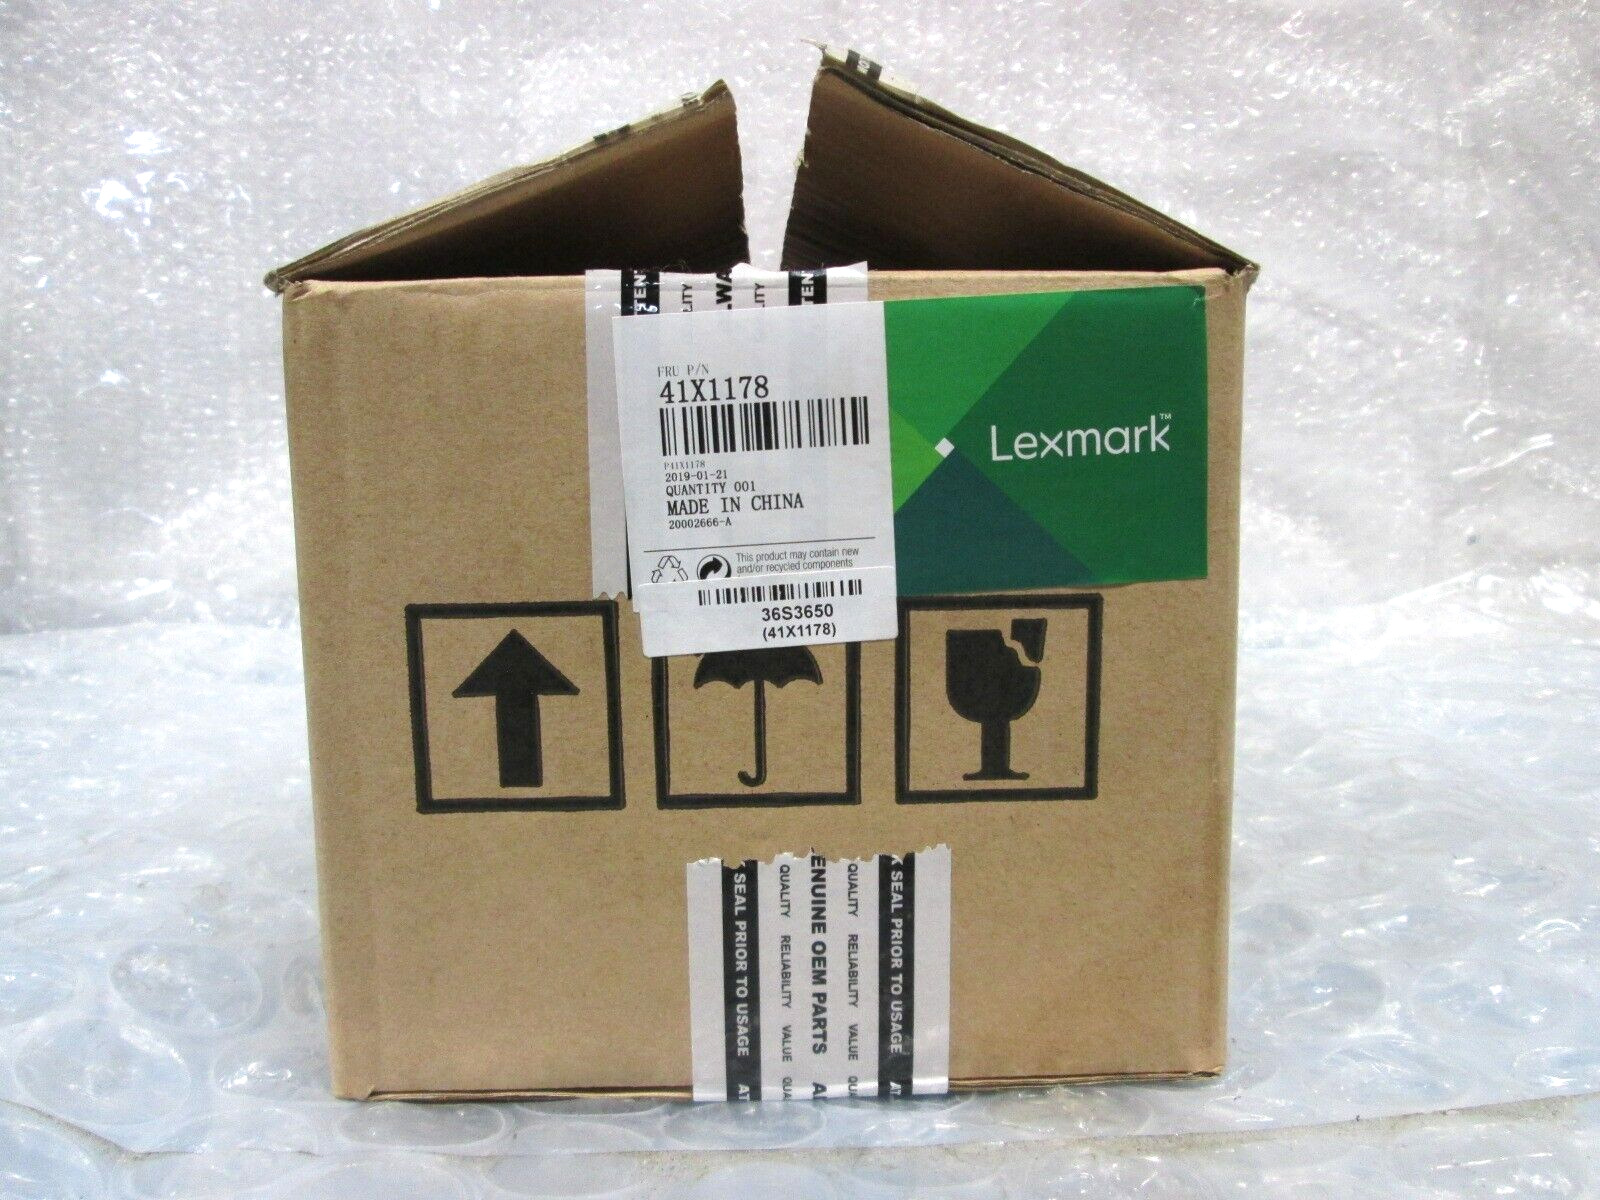 Lexmark 41X1178 fuser